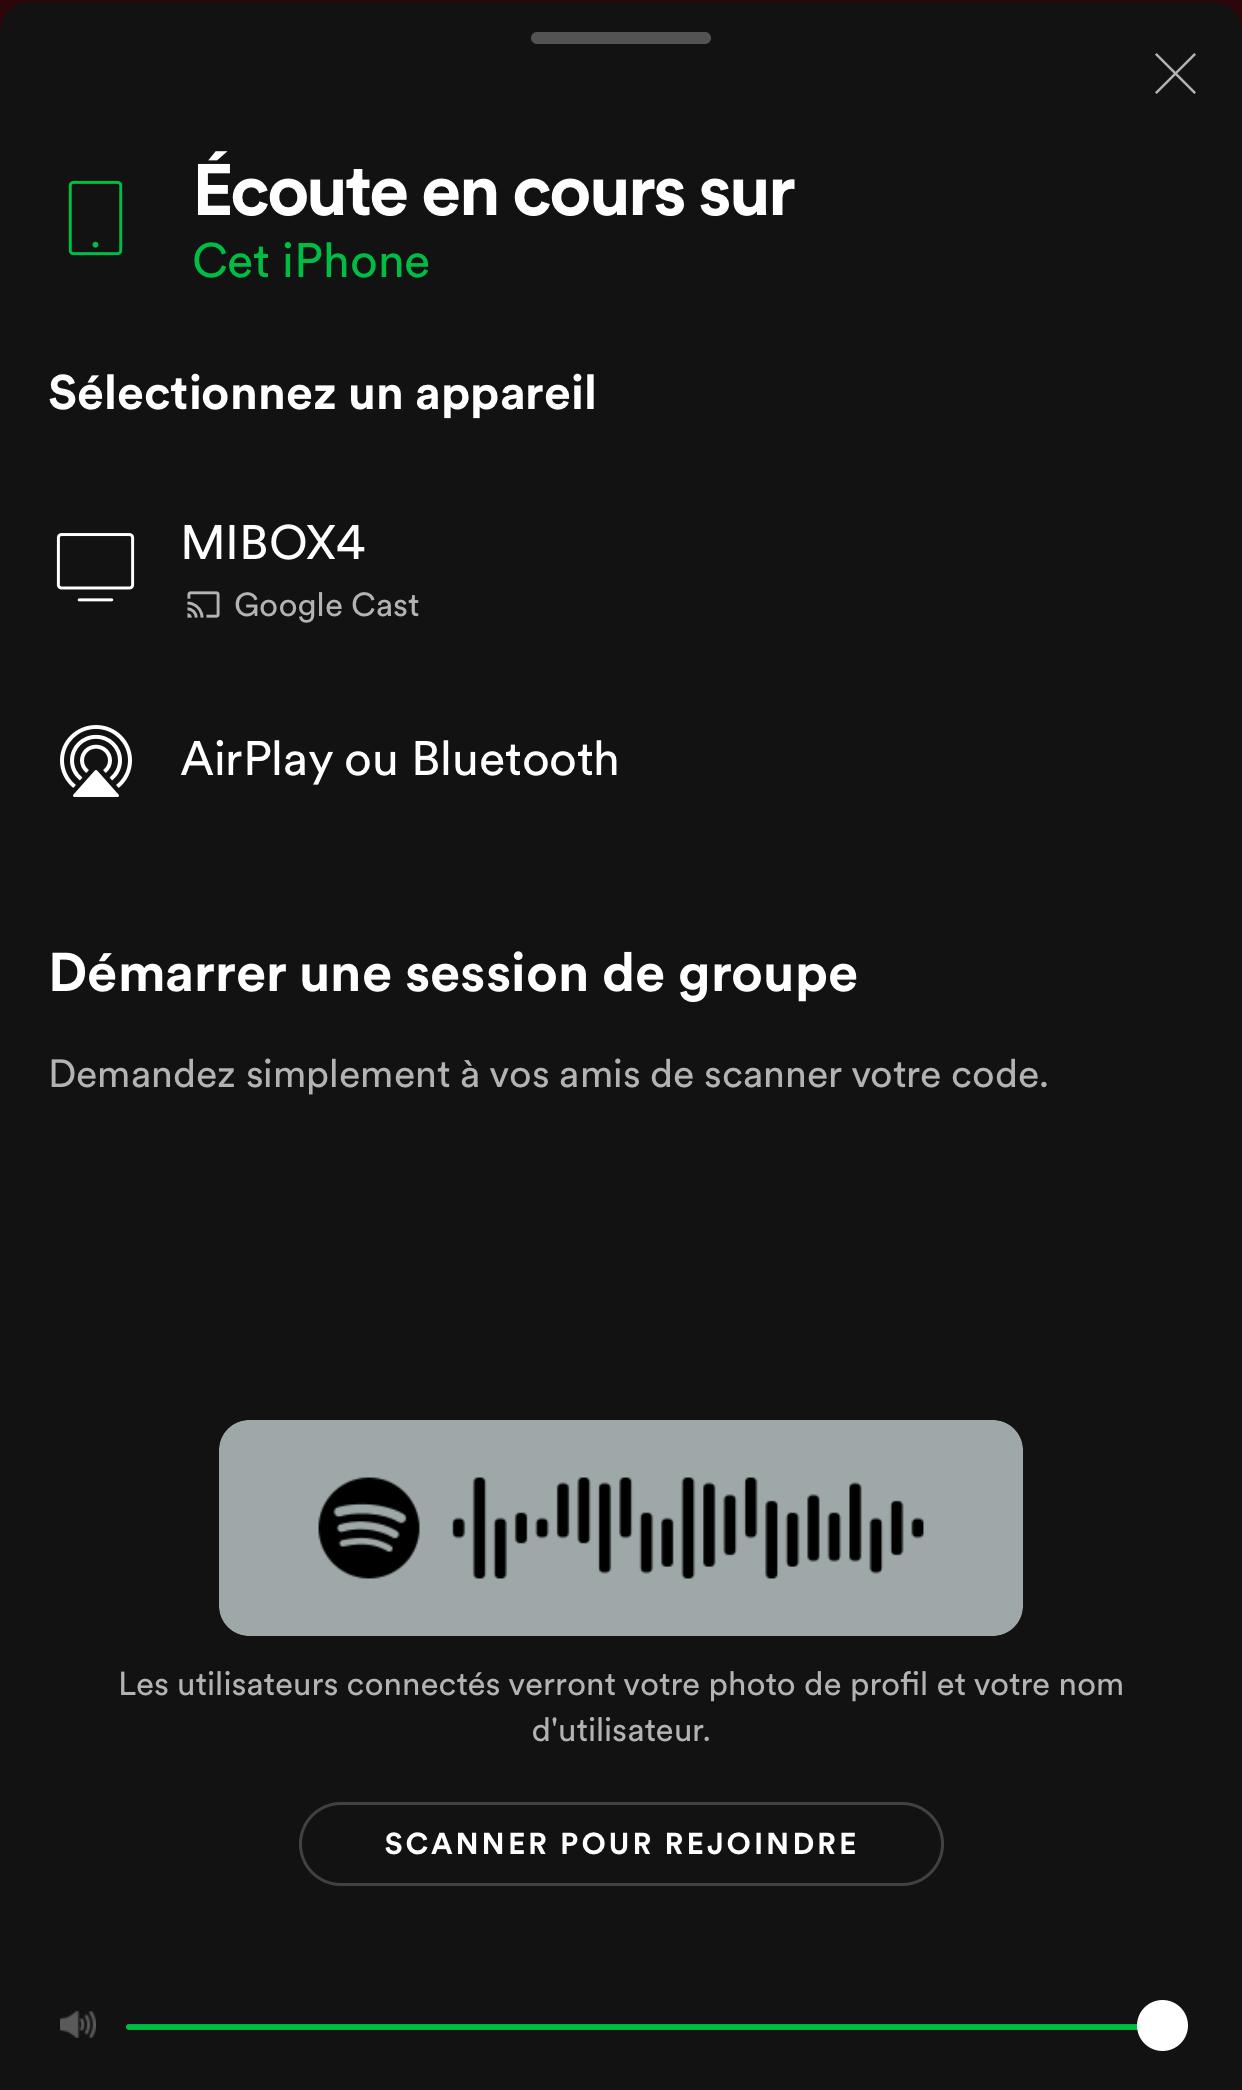 Spotify vous permet désormais d'écouter de la musique en groupe